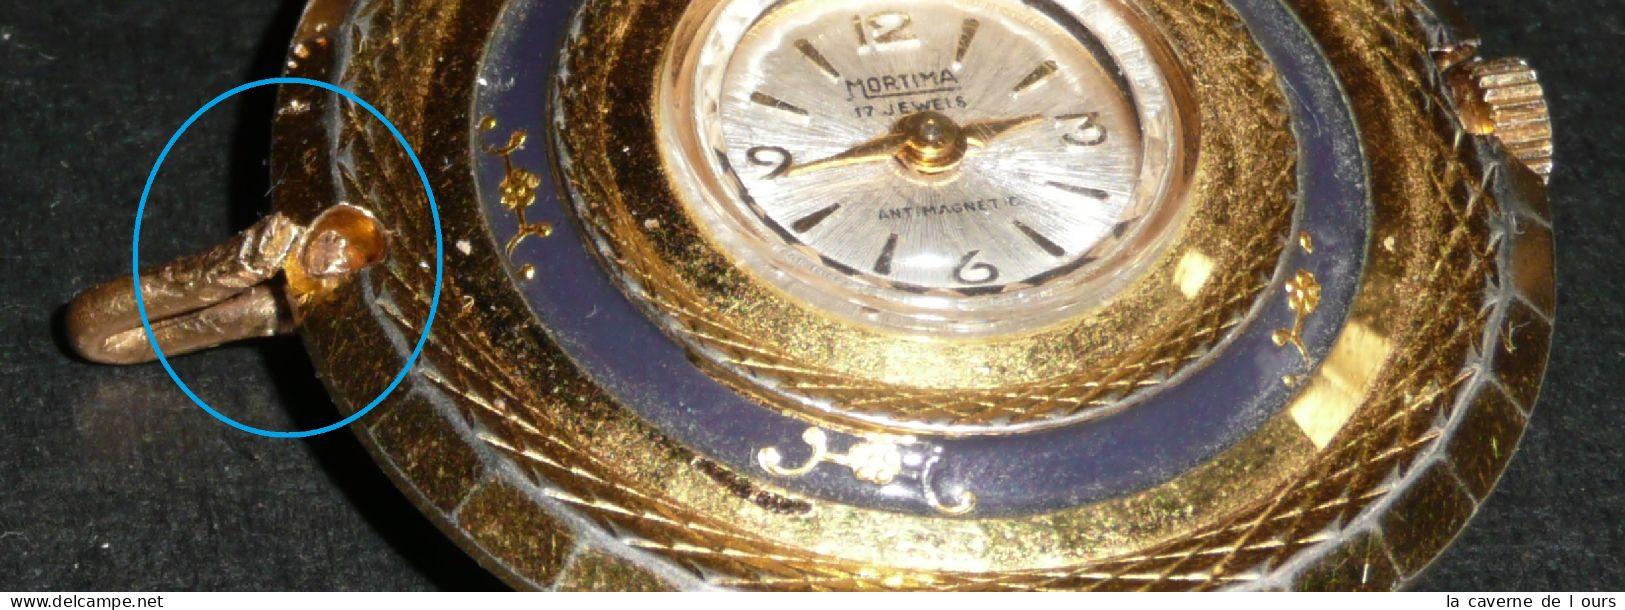 Rare Ancien Pendentif-montre Mécanique, MORTIMA 17 Jewels, Décor Fleurs, Gousset - Relojes De Bolsillo